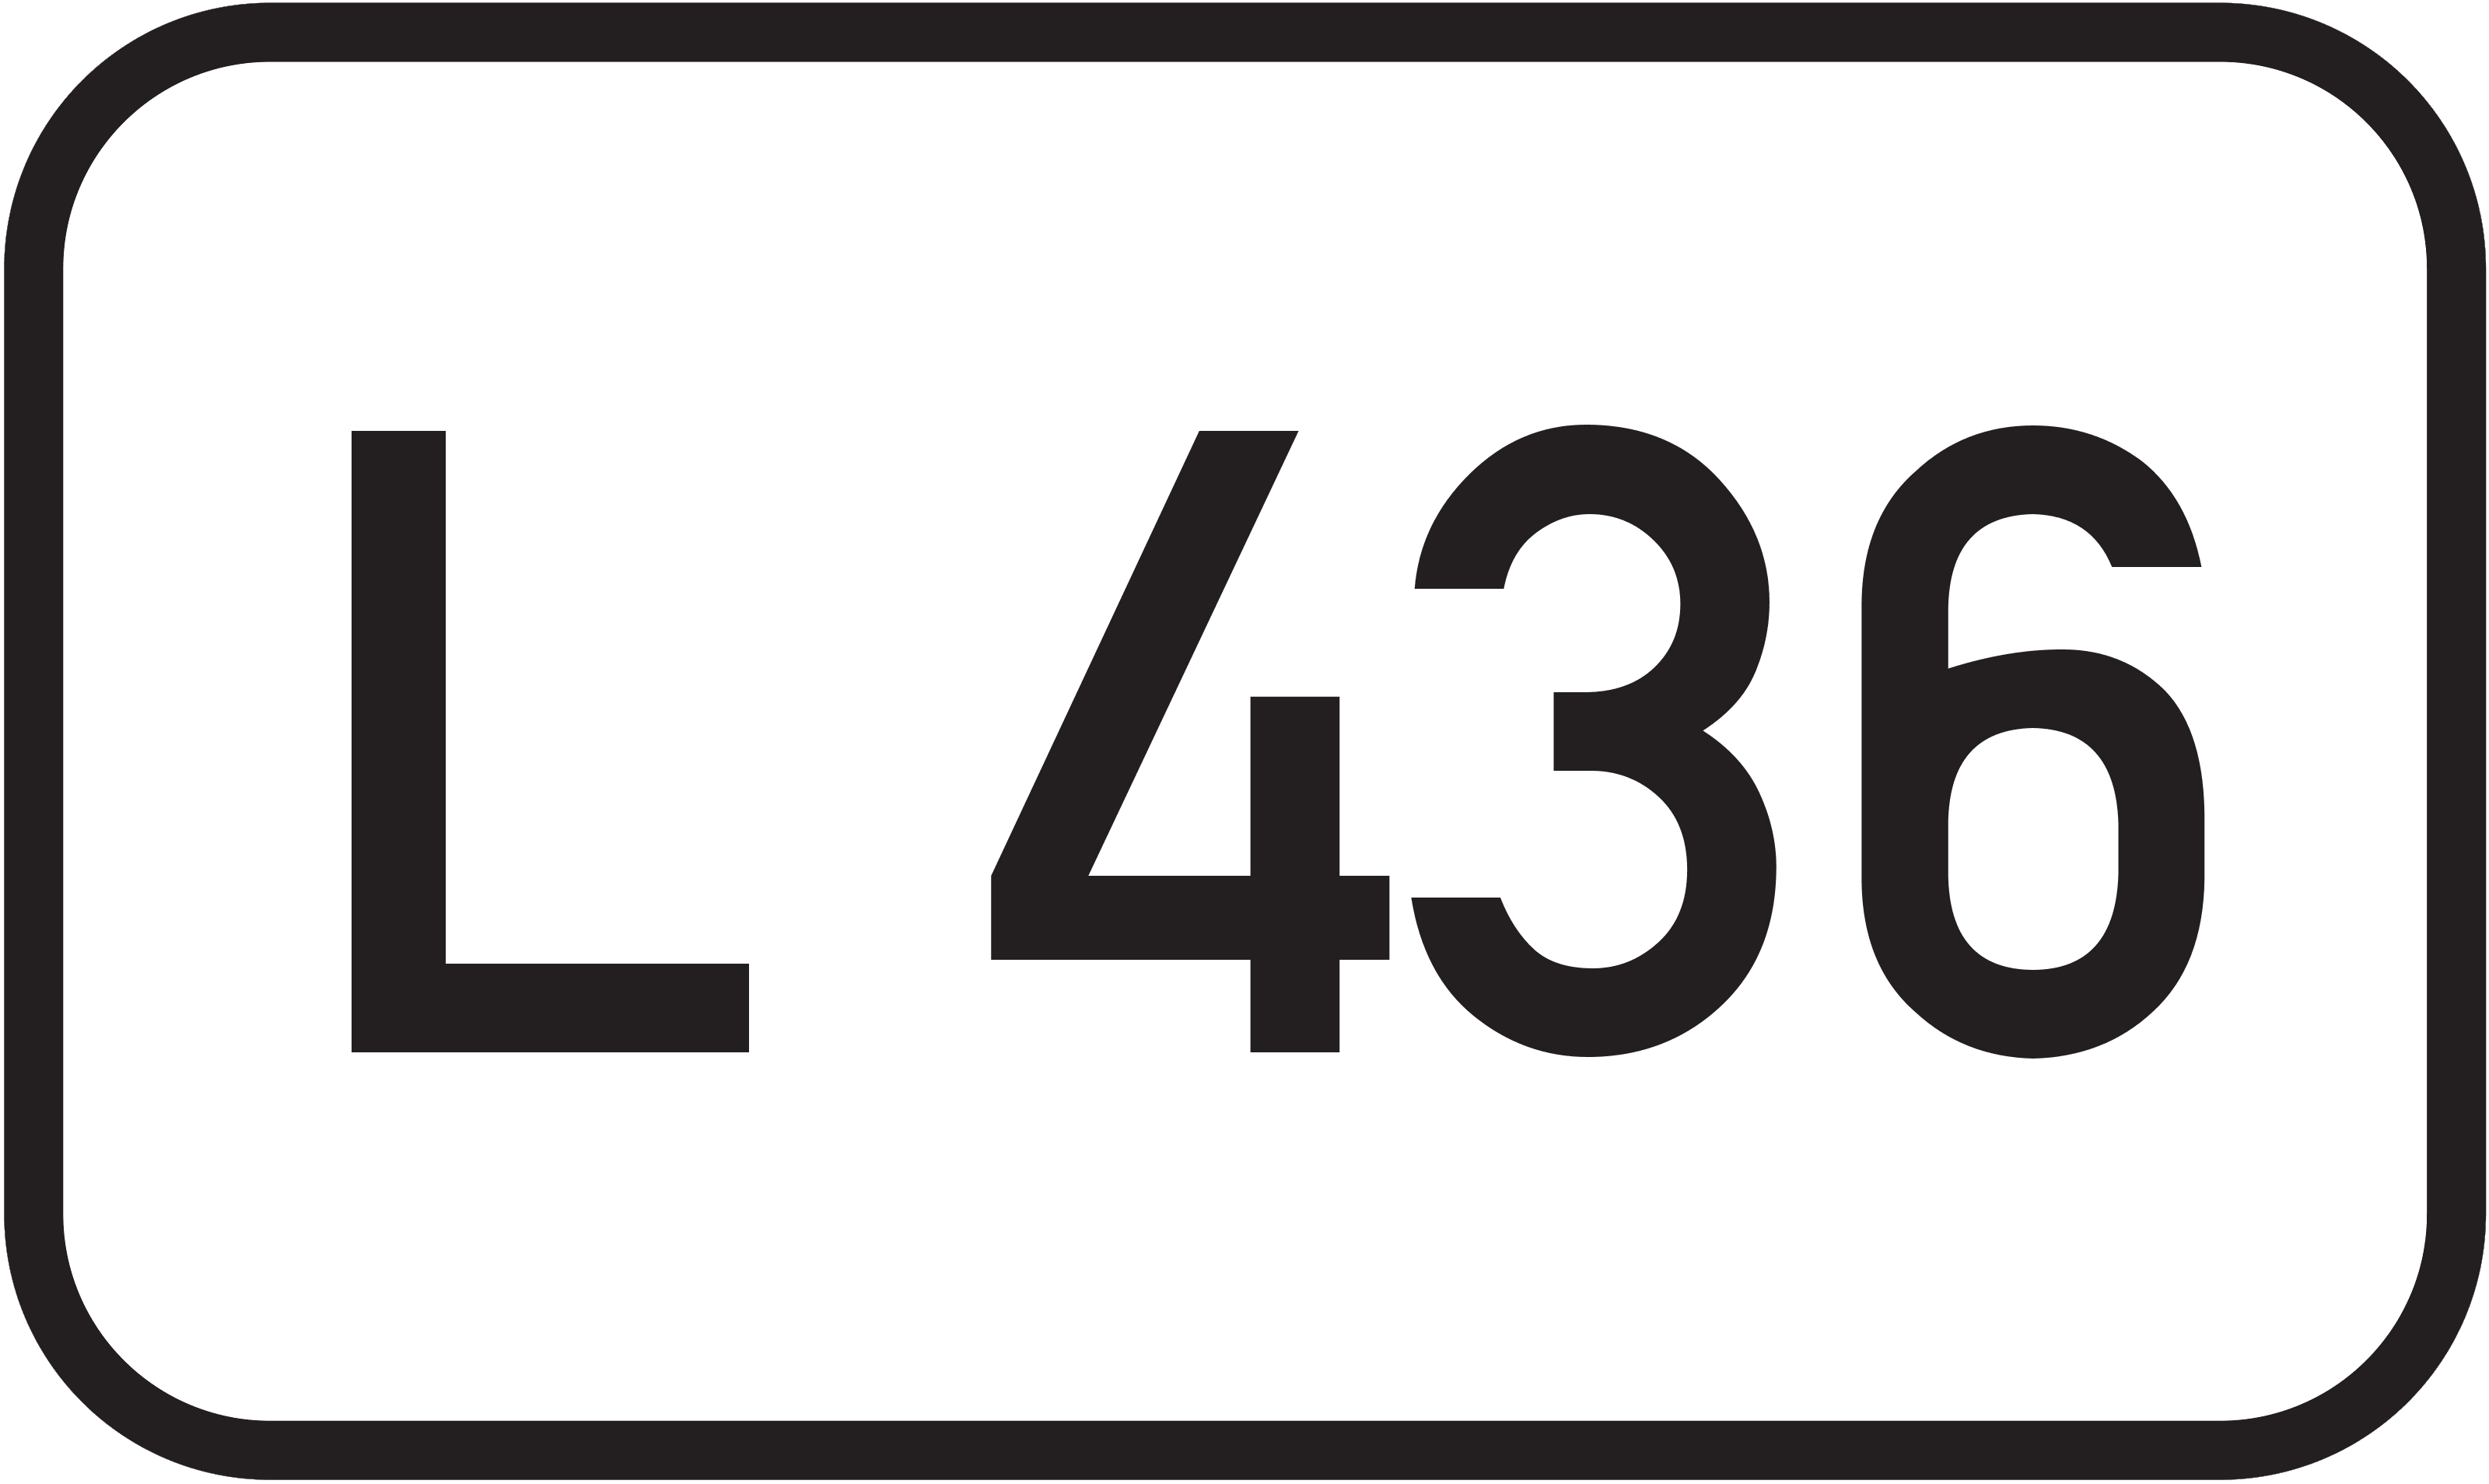 Landesstraße L 436